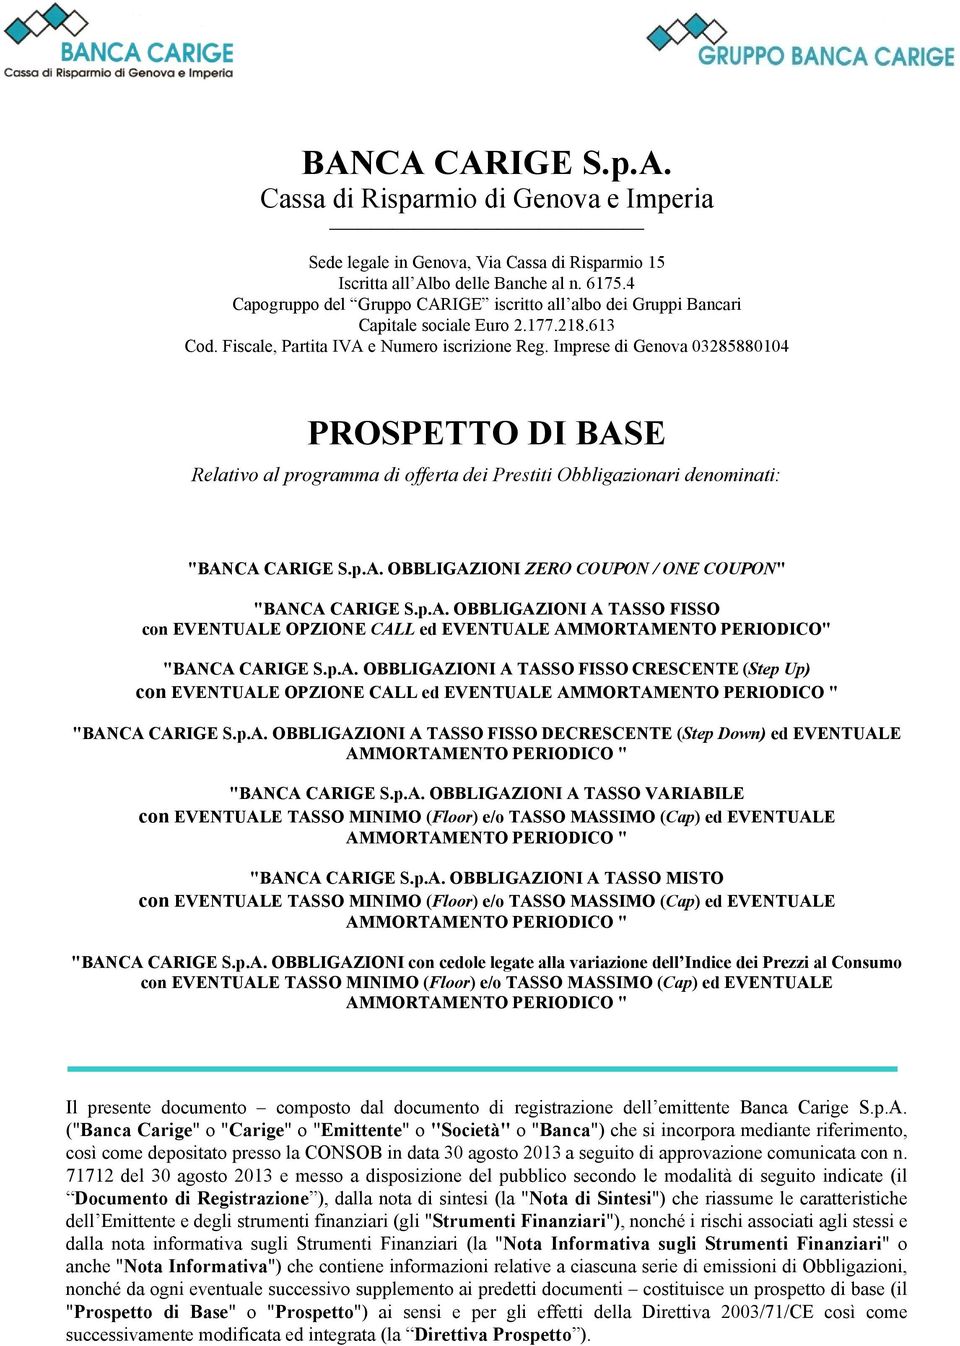 Imprese di Genova 03285880104 PROSPETTO DI BASE Relativo al programma di offerta dei Prestiti Obbligazionari denominati: "BANCA CARIGE S.p.A. OBBLIGAZIONI ZERO COUPON / ONE COUPON" "BANCA CARIGE S.p.A. OBBLIGAZIONI A TASSO FISSO con EVENTUALE OPZIONE CALL ed EVENTUALE AMMORTAMENTO PERIODICO" "BANCA CARIGE S.